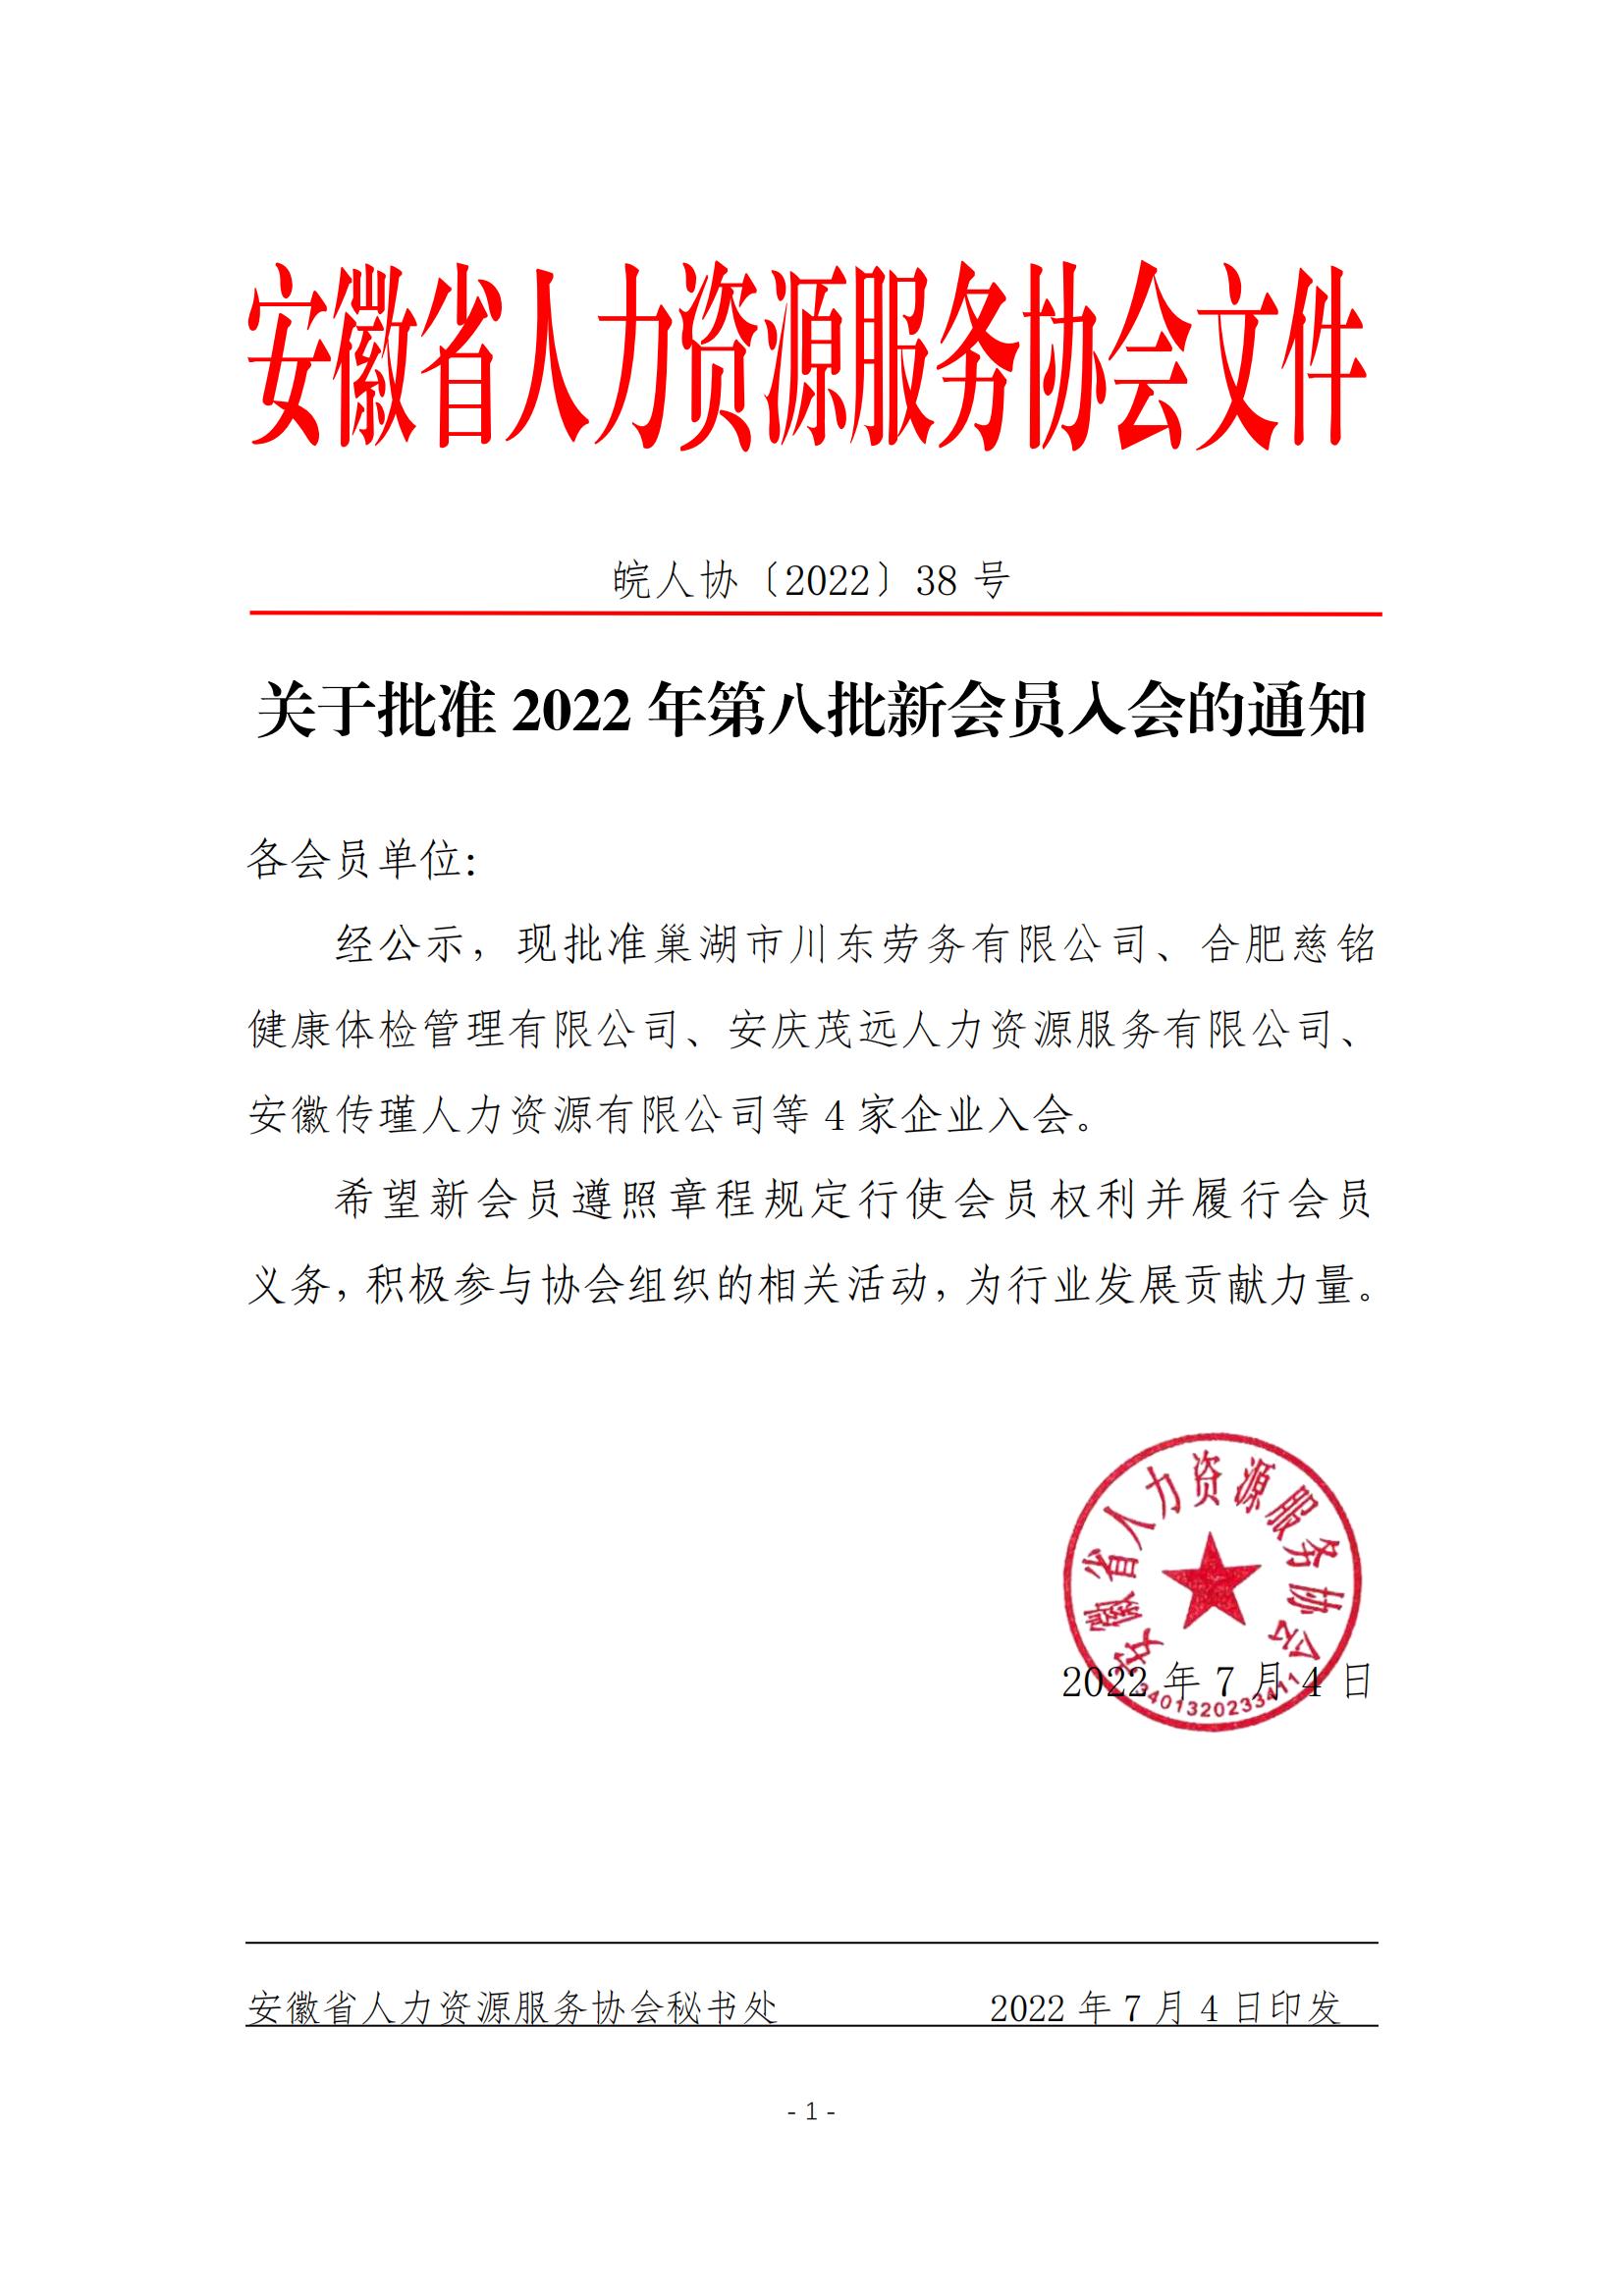 皖人协（2022）38号，关于批准2022年第八批新会员入会的通知_00.jpg